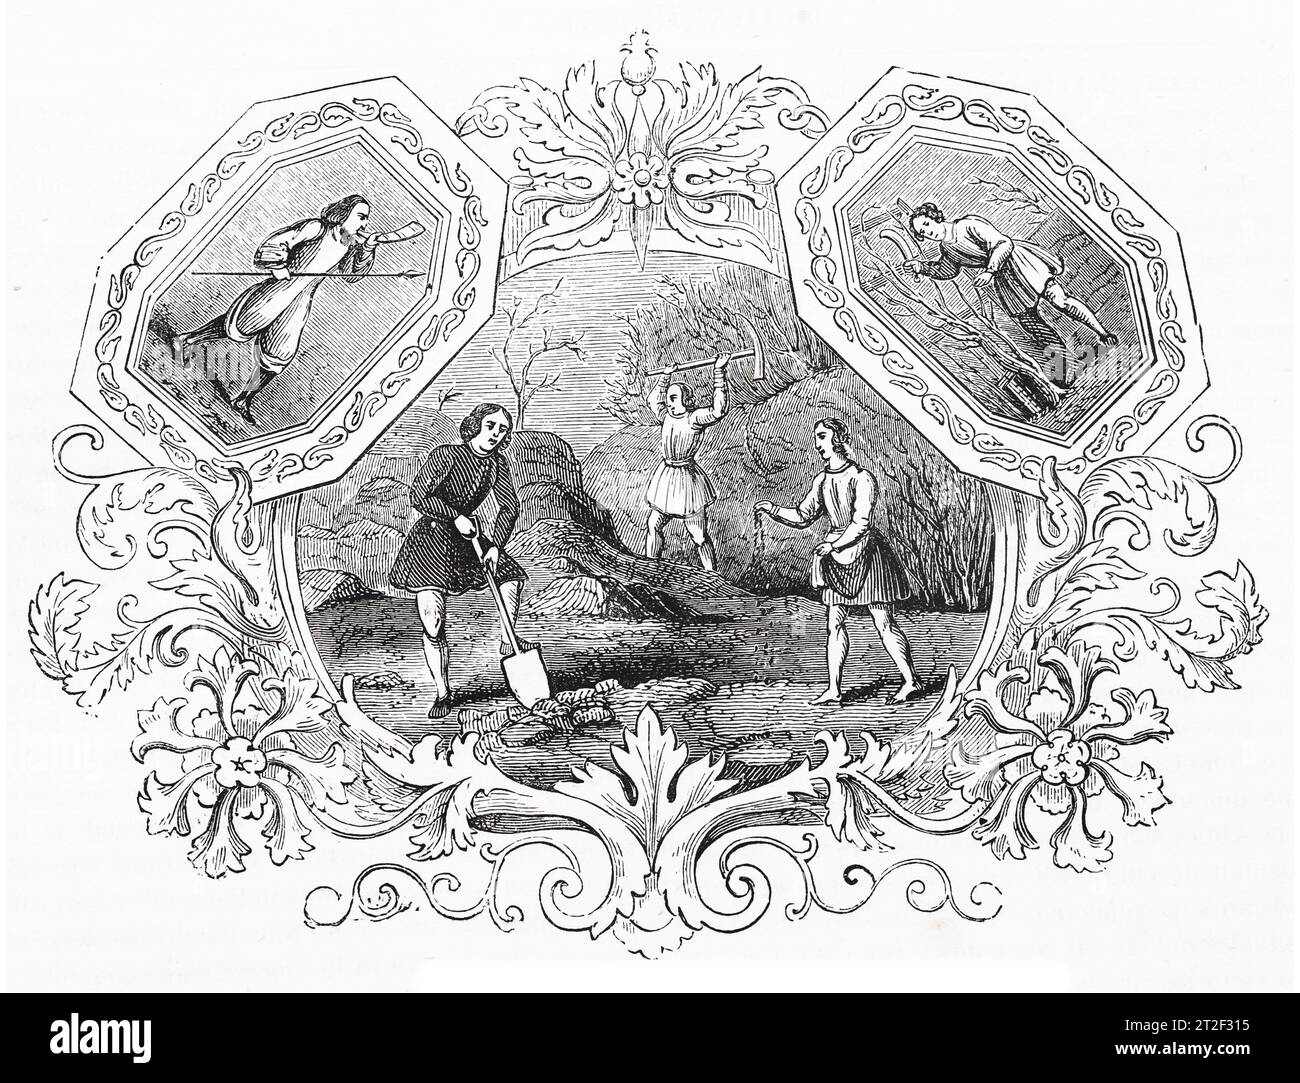 Emblemi sassoni del mese di marzo. Black and White Illustration from the 'Old England' pubblicato da James Sangster nel 1860. Foto Stock